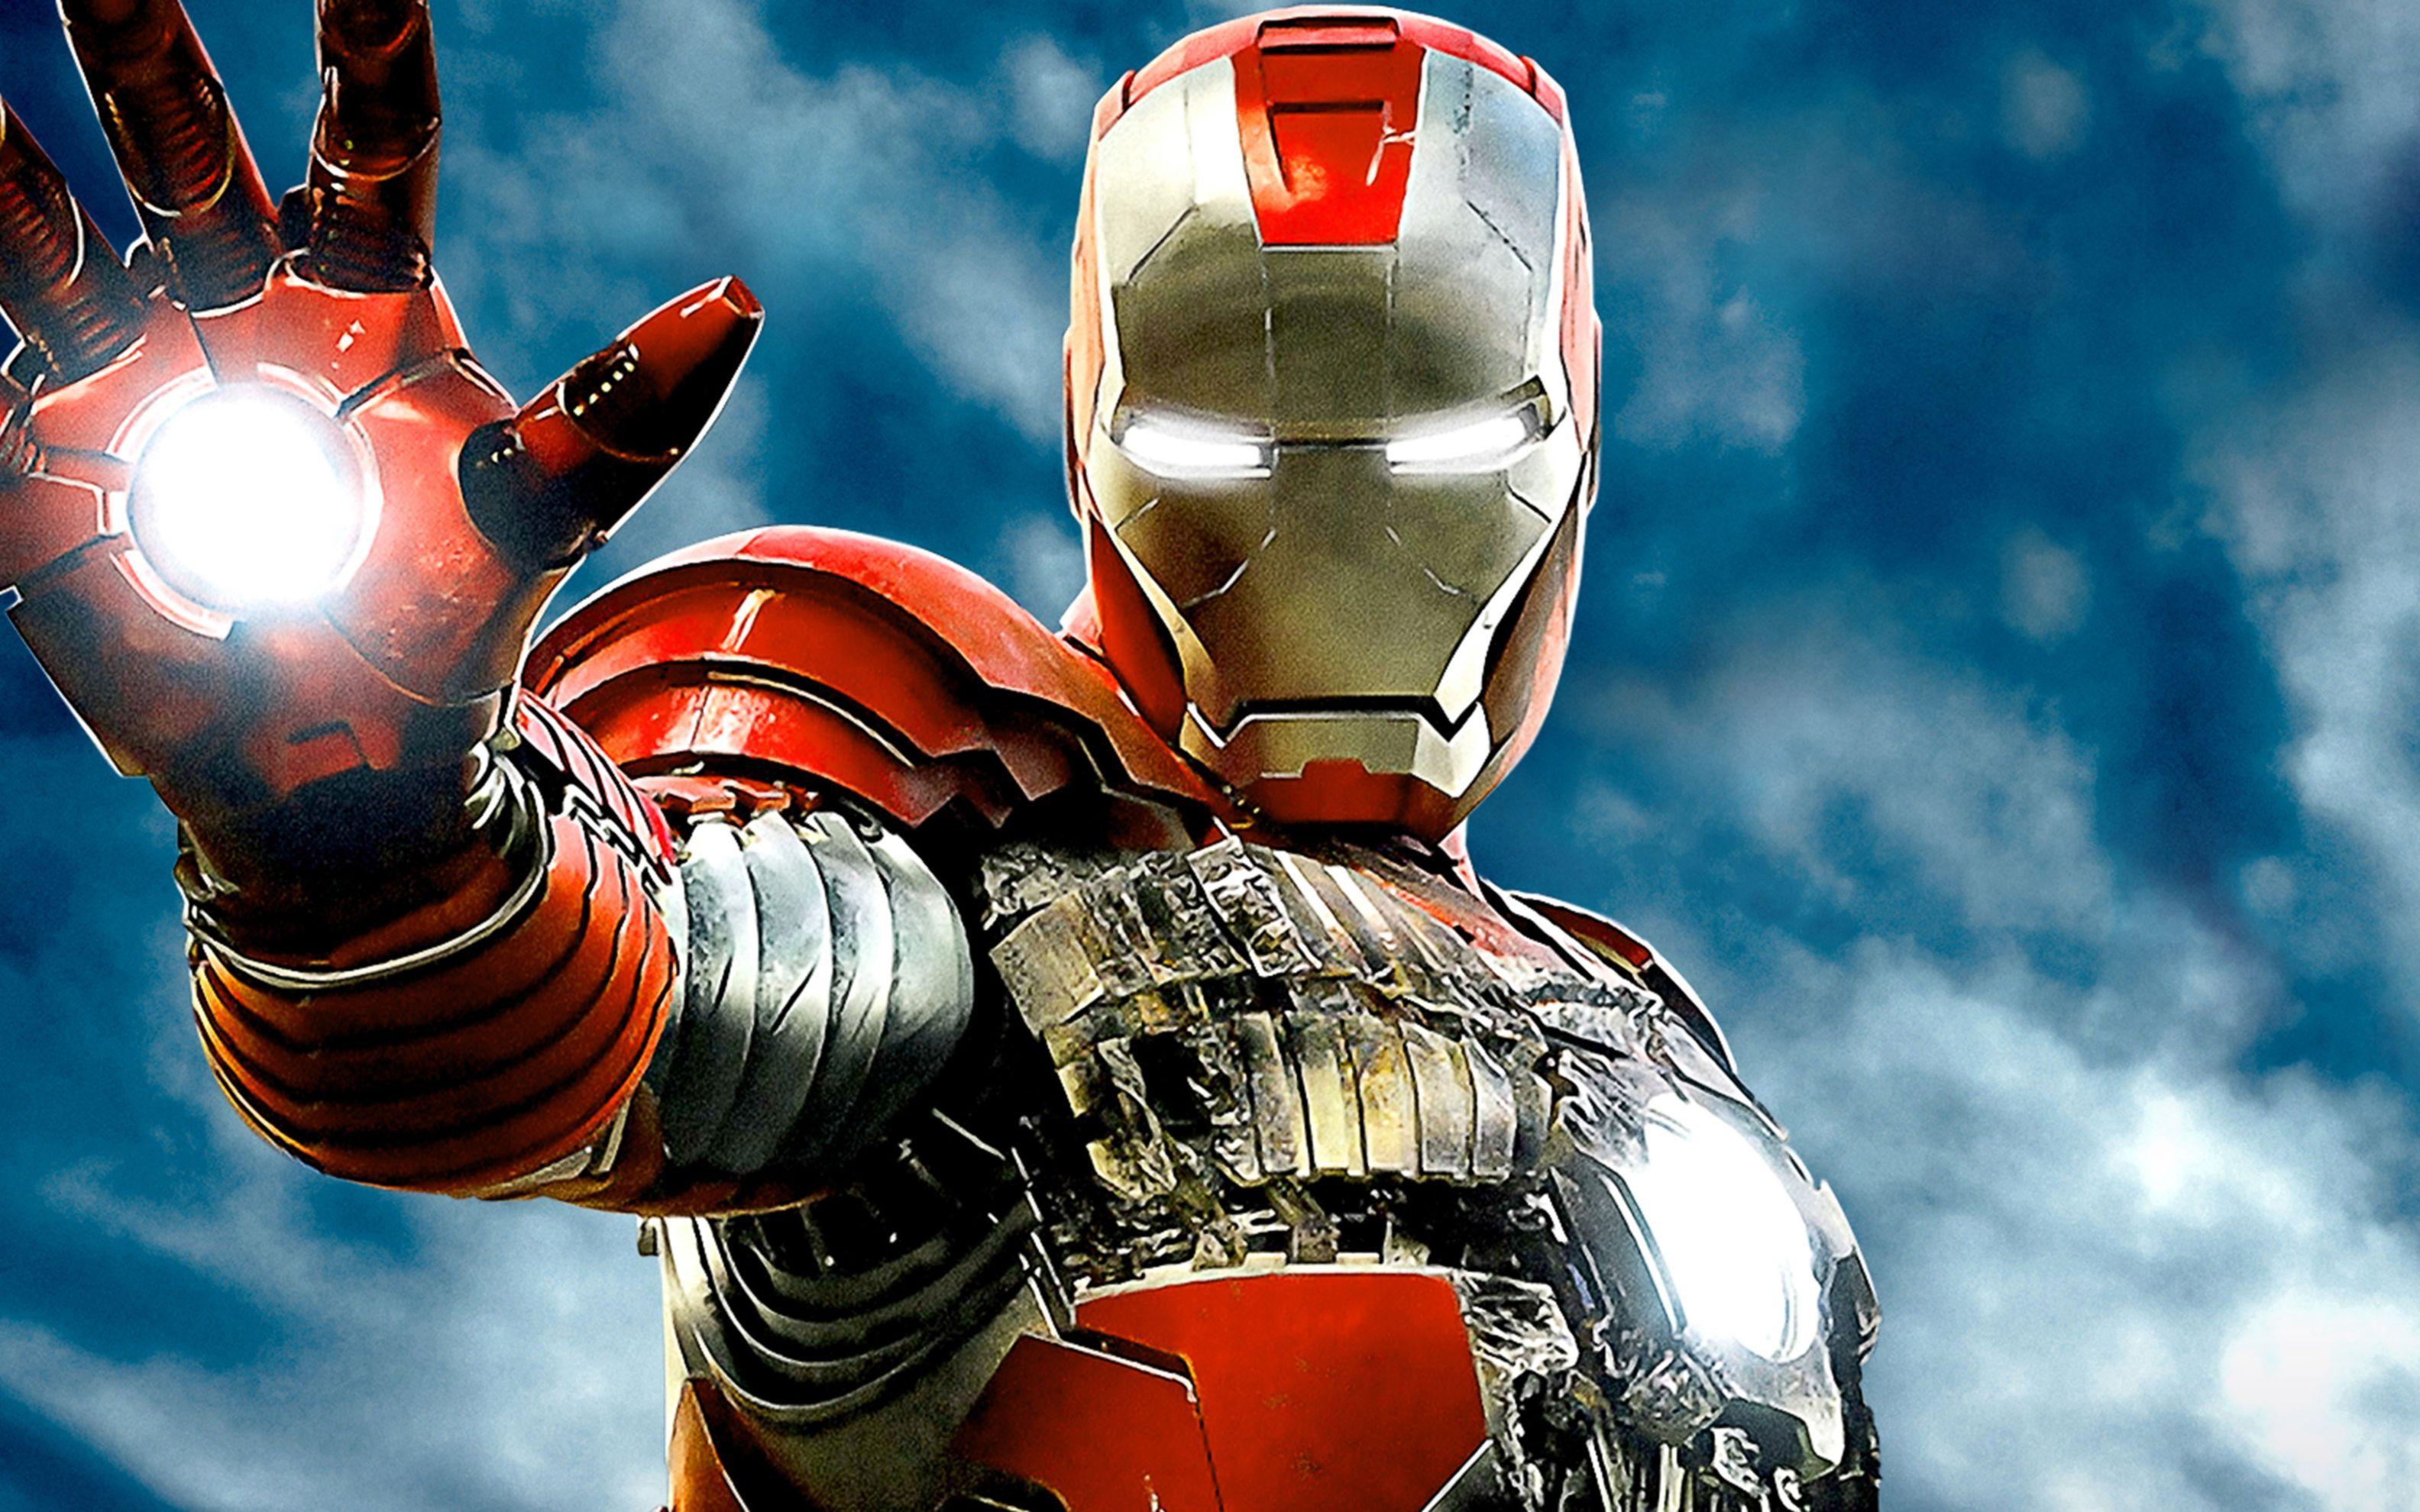 Iron Man 2 Imax Poster Wide Wallpaper: Desktop HD Wallpaper